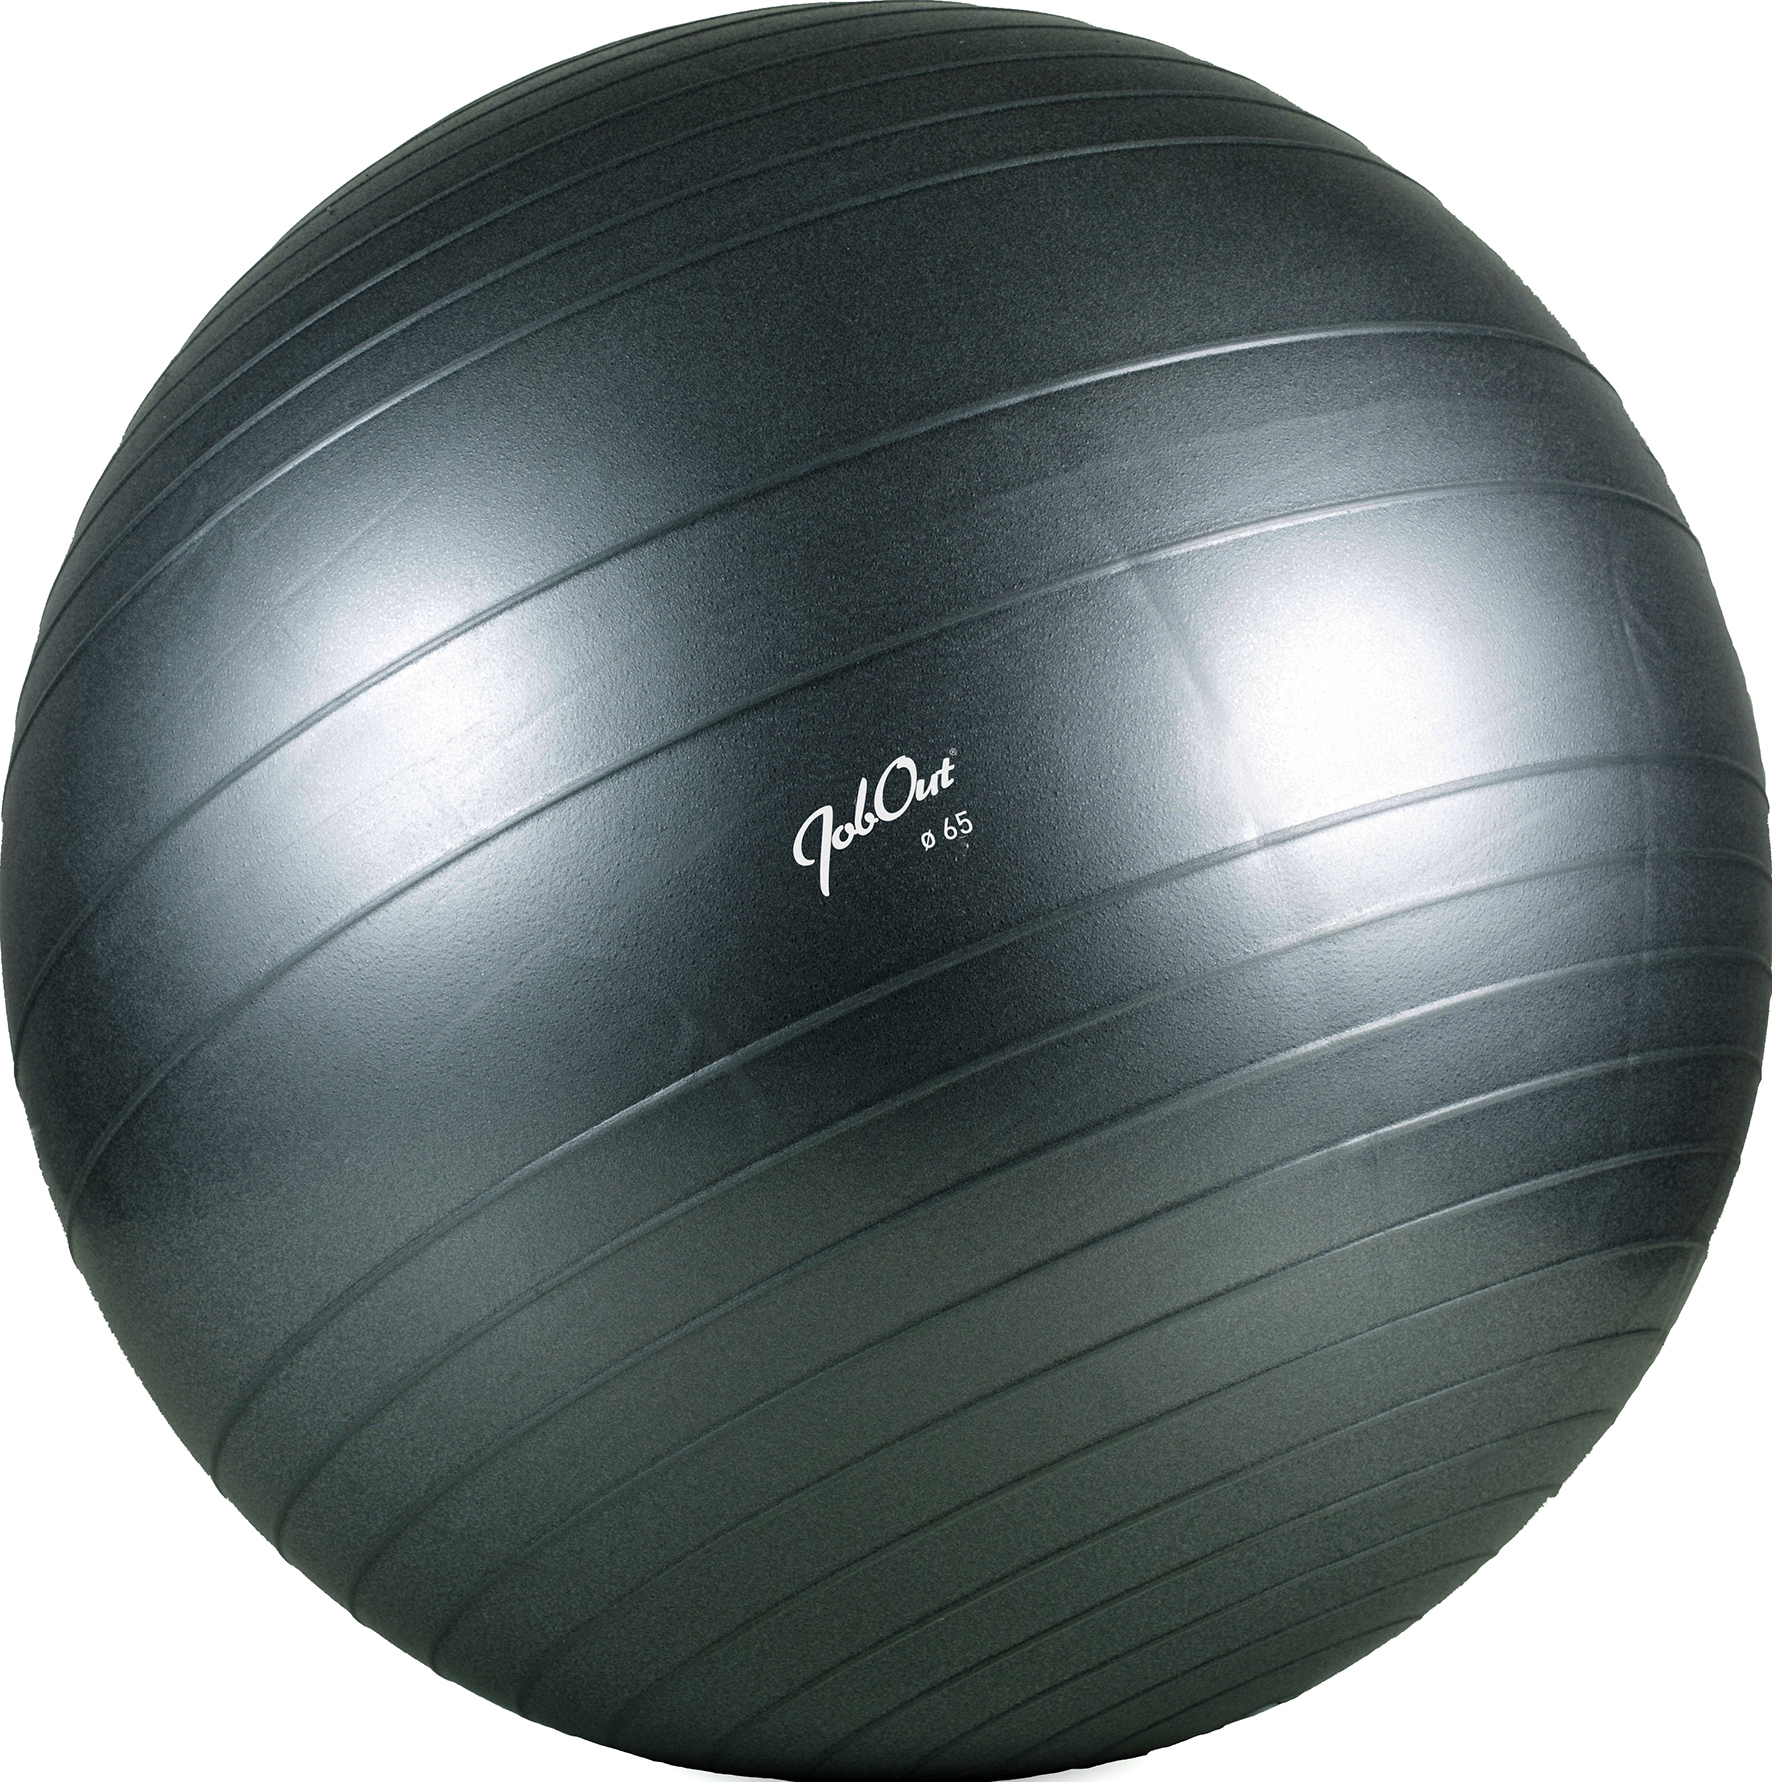 [2470418] JobOut Balance Ball, 65 cm